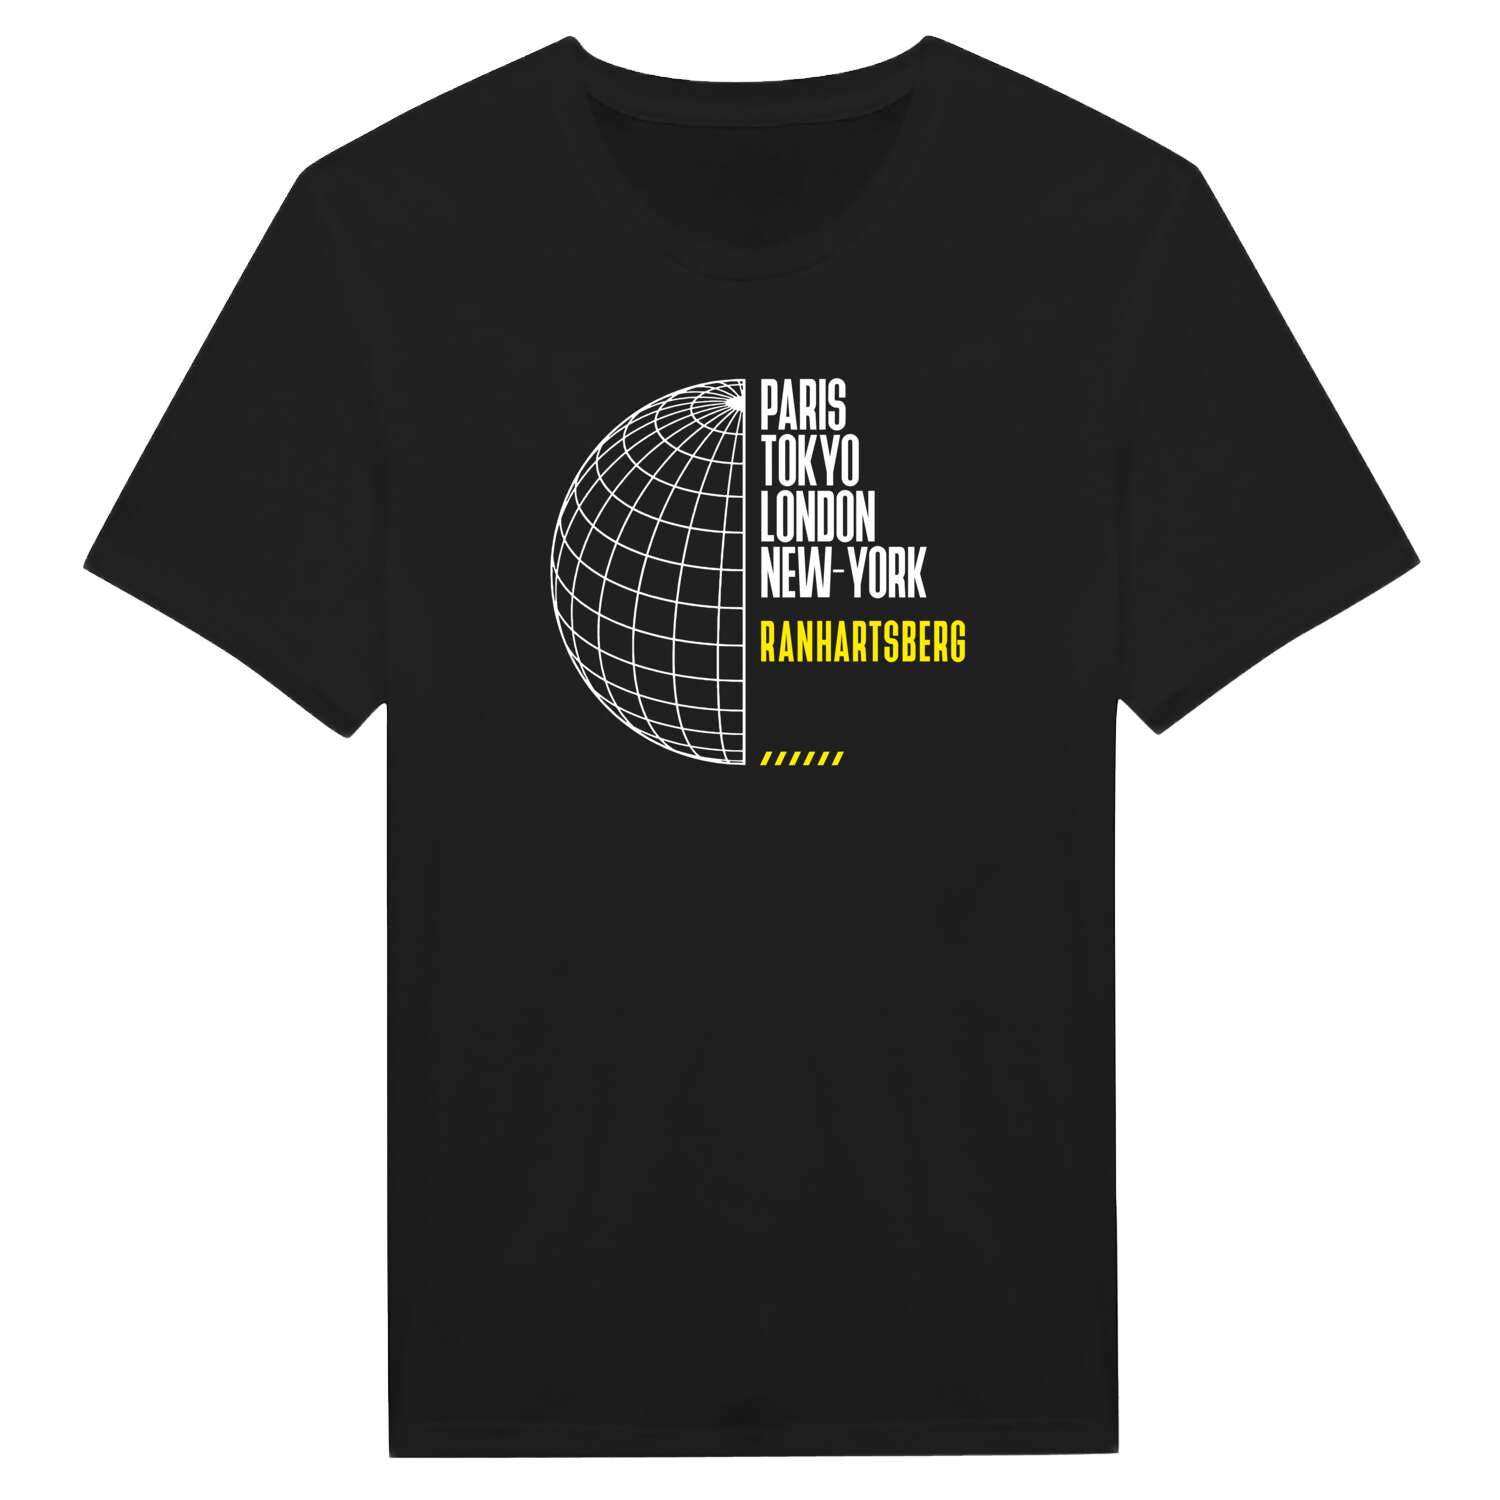 Ranhartsberg T-Shirt »Paris Tokyo London«